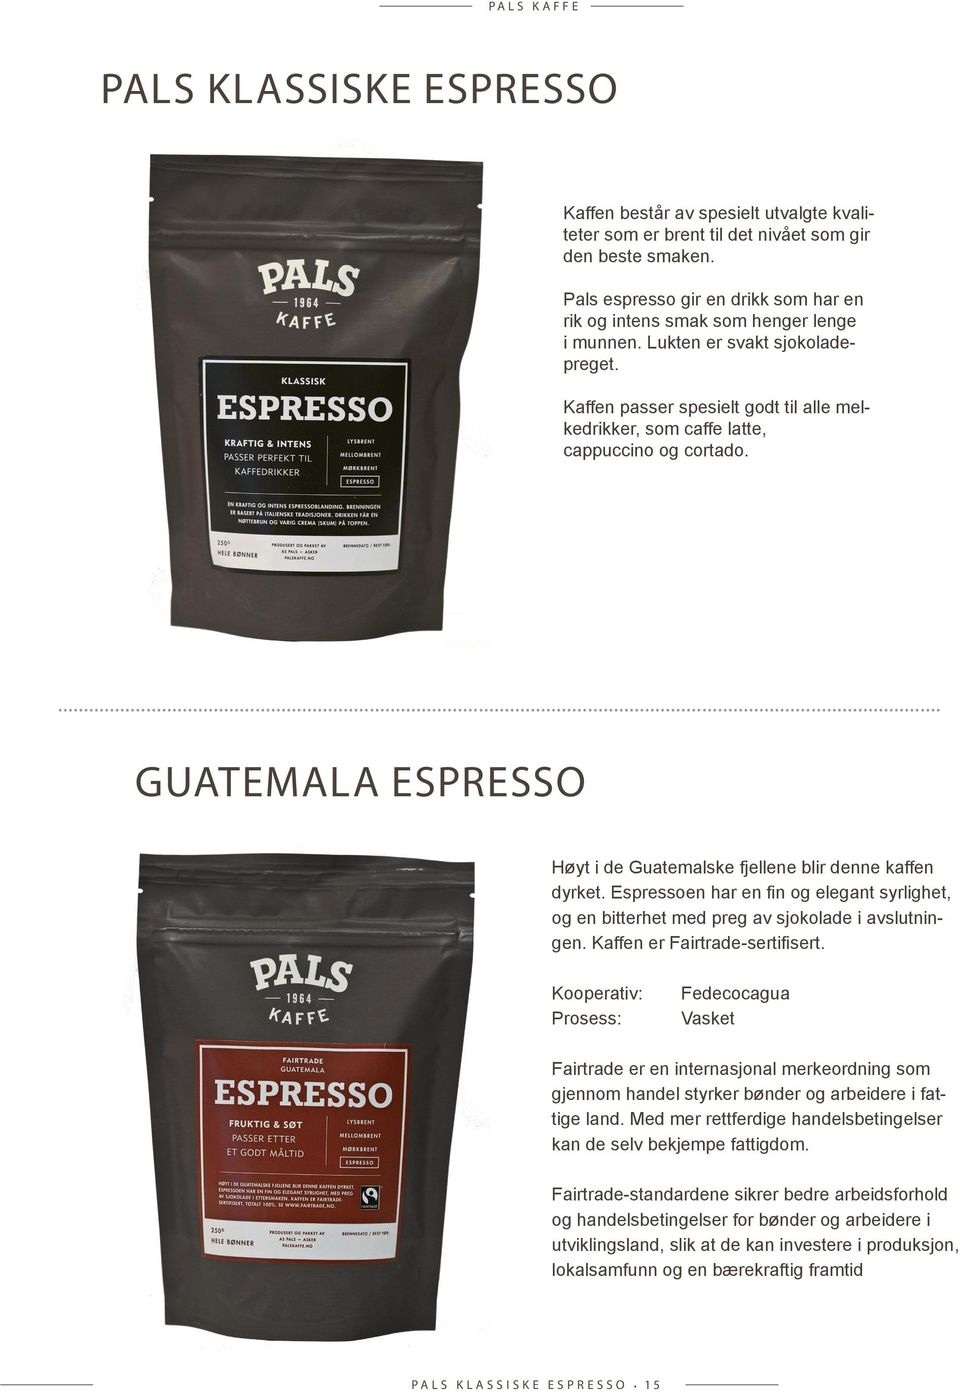 Kaffen passer spesielt godt til alle melkedrikker, som caffe latte, cappuccino og cortado.... GUaTEMaLa EsprEssO Høyt i de Guatemalske fjellene blir denne kaffen dyrket.